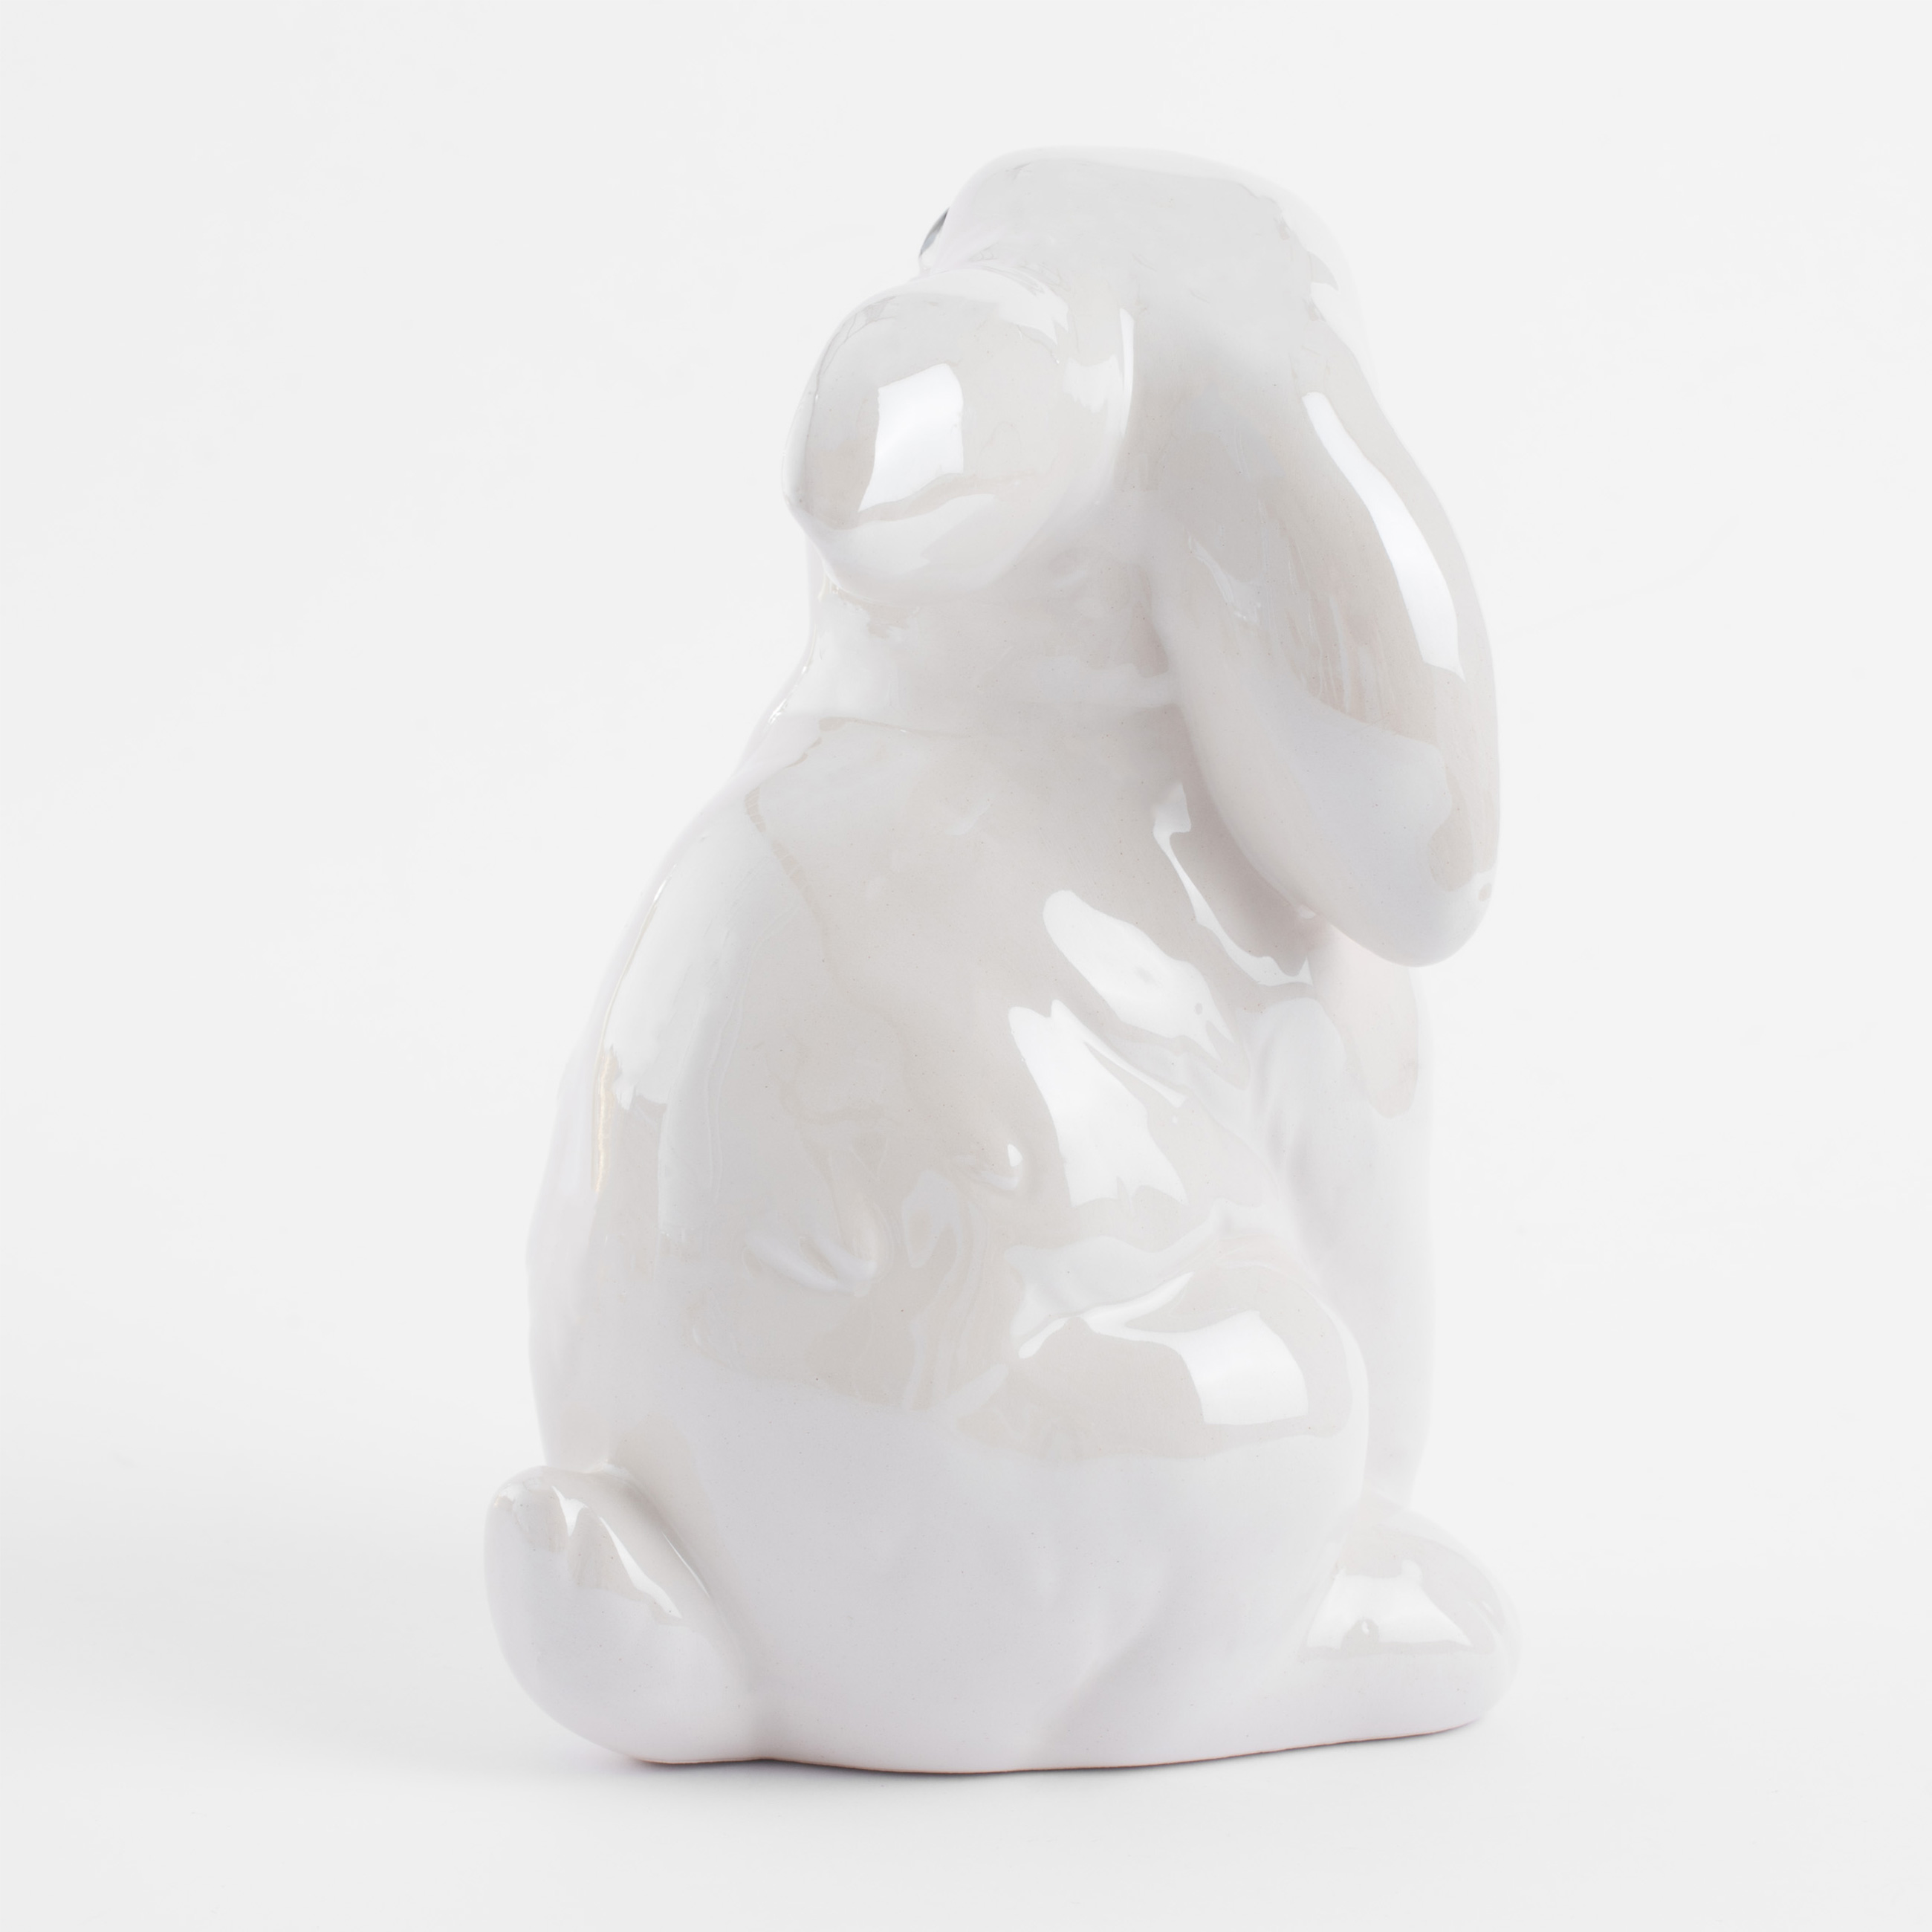 Статуэтка, 16 см, керамика, молочная, перламутр, Кролик, Easter изображение № 4